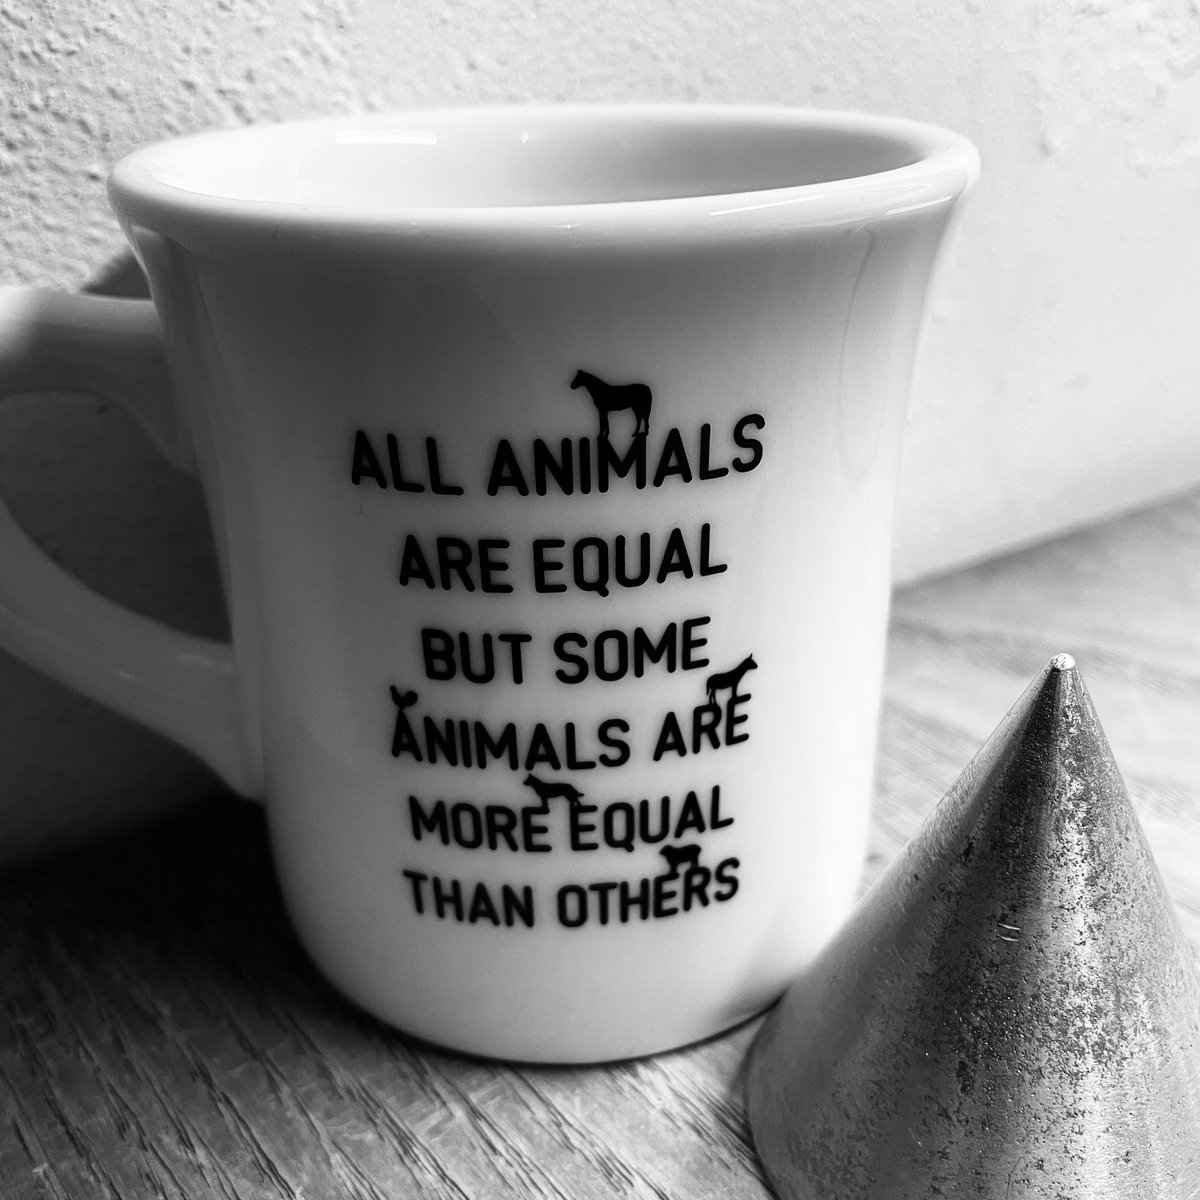 ジョージ・オーウェルによる小説、動物農場、アニマル・ファームのマグカップをデザインしたよ。僕はAA=(All Animals Are Equal)のデザインもしていたので感慨深い。クールなタイポグラフィは佐藤正幸氏のManiackers Designの232MKSDを使用。#animalfarm #positron_hiroakidoi #hayakawafactory